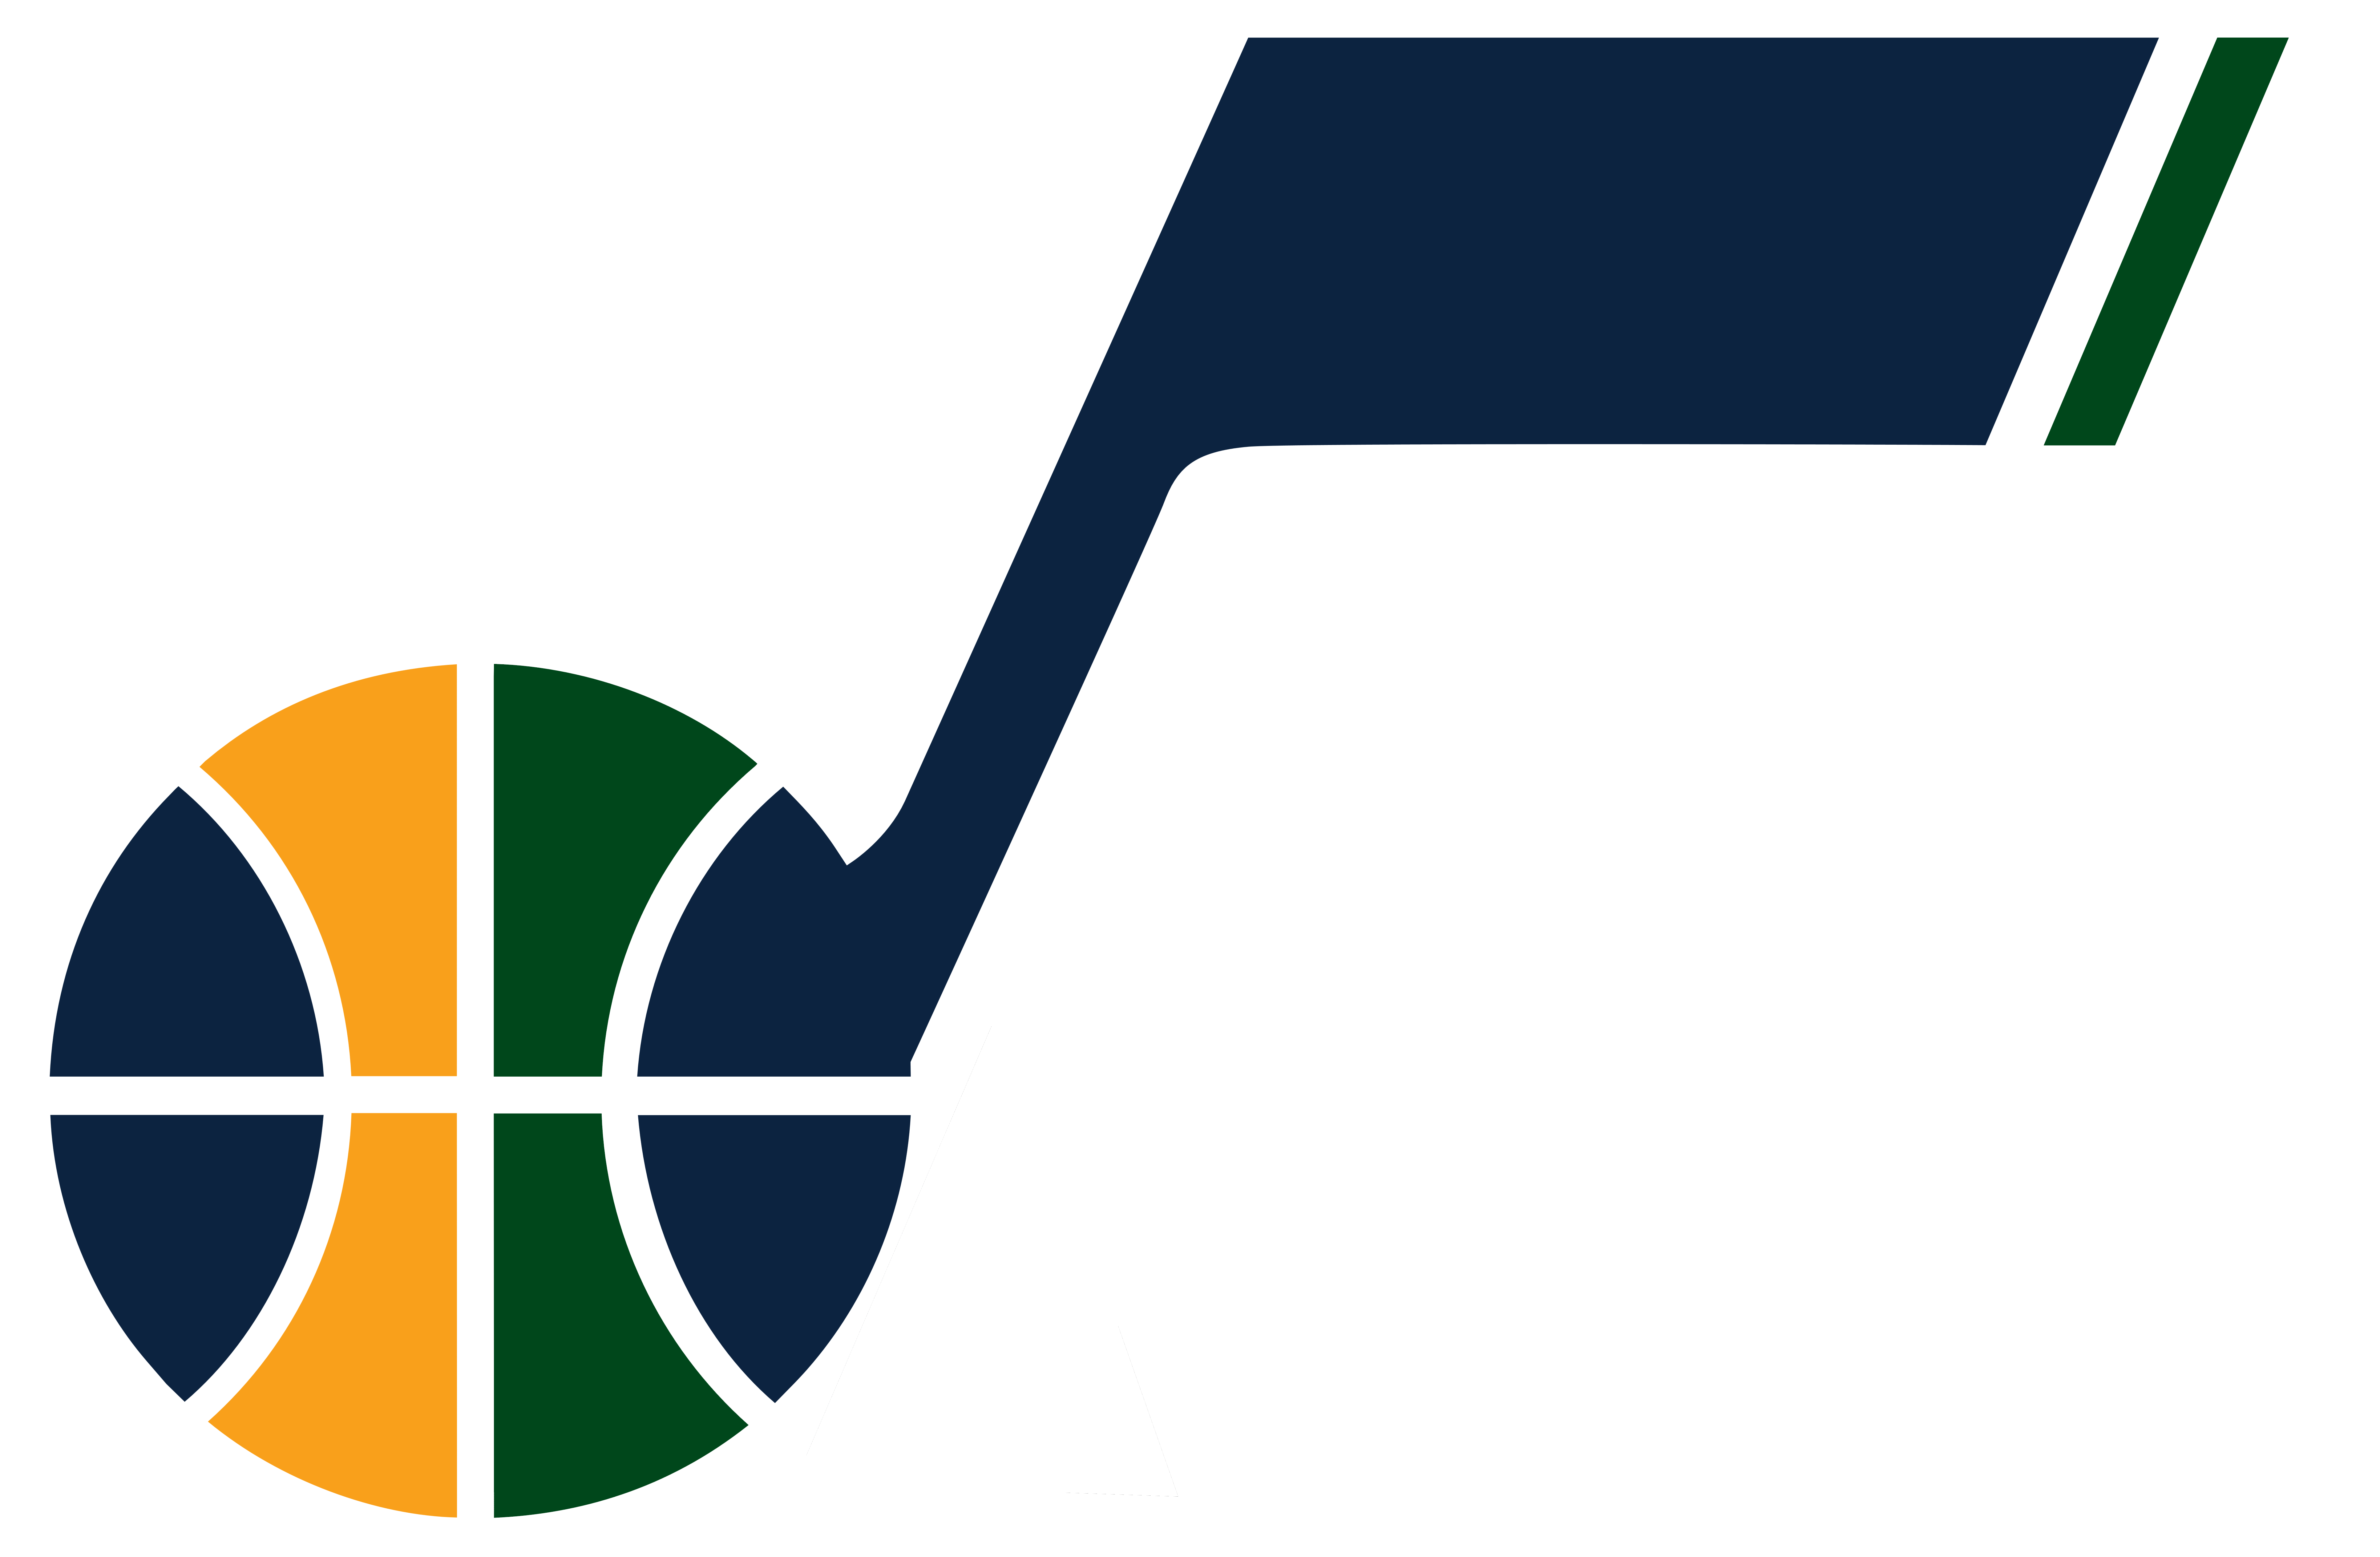 Utah Jazz logo, logotype